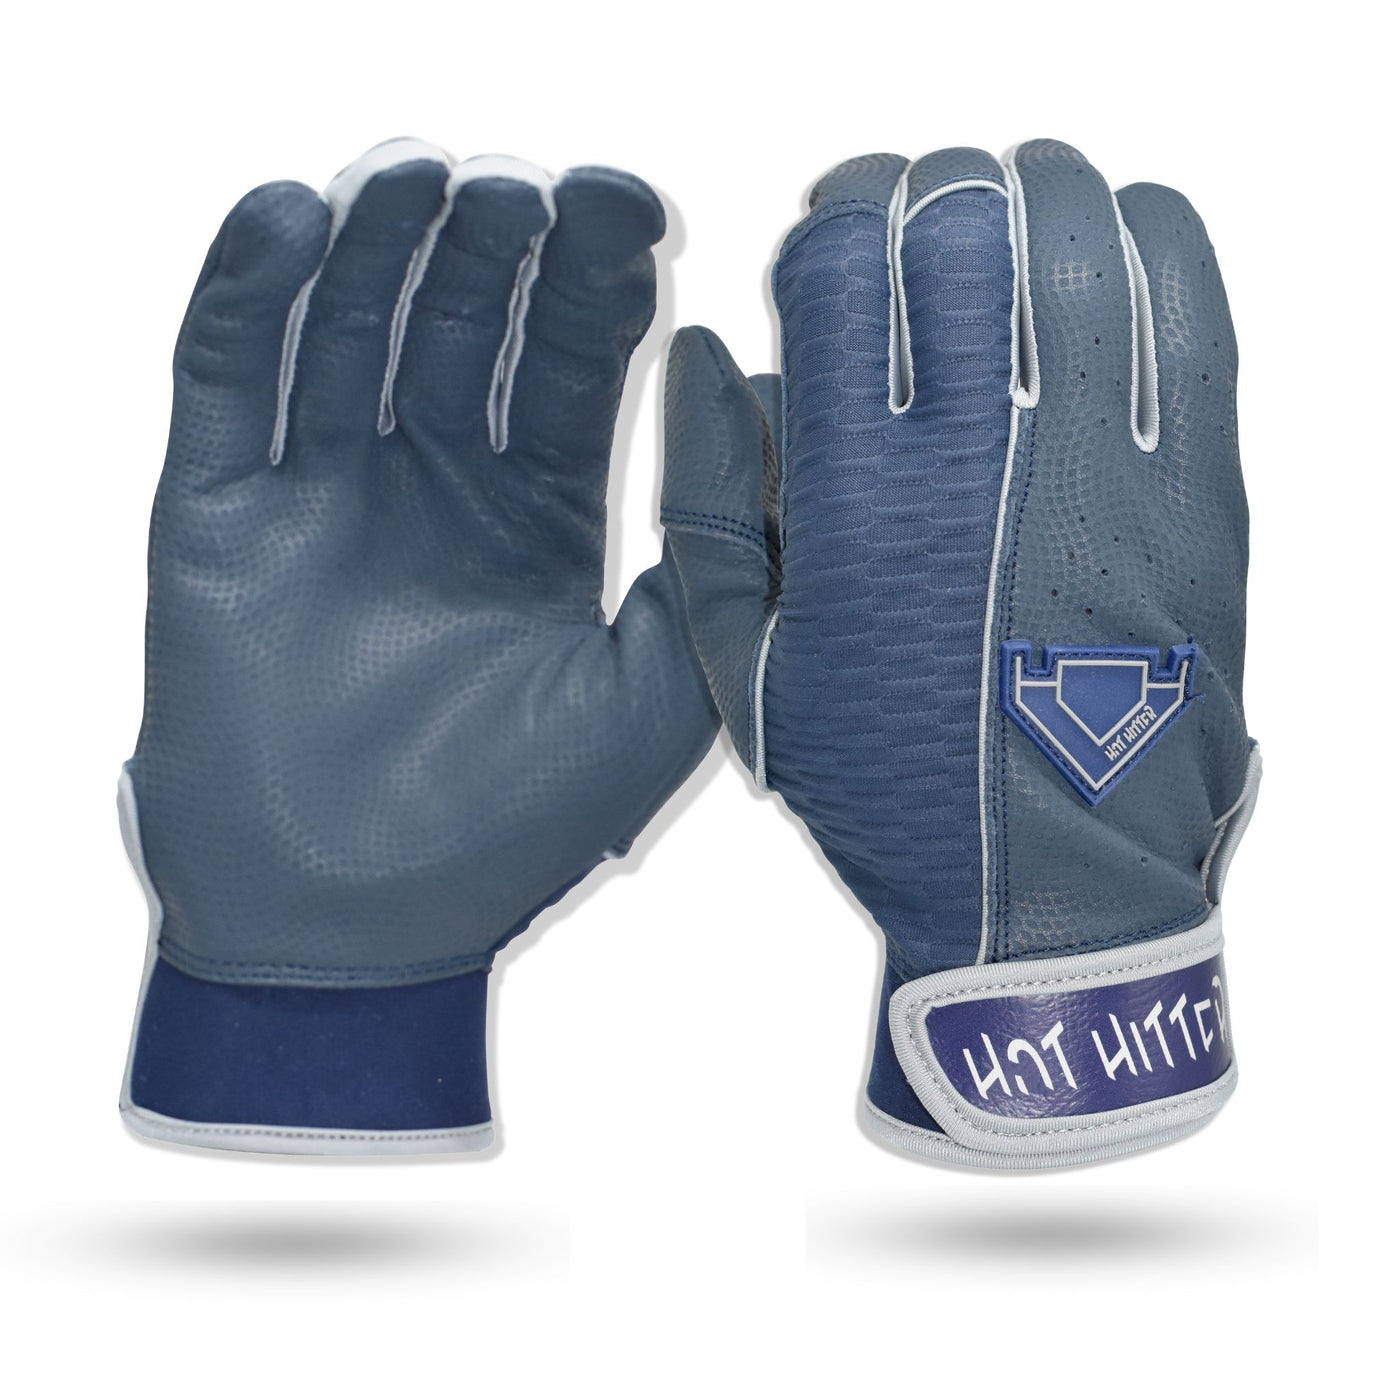 Extra Innings Batting Gloves Navy Blue & Silver